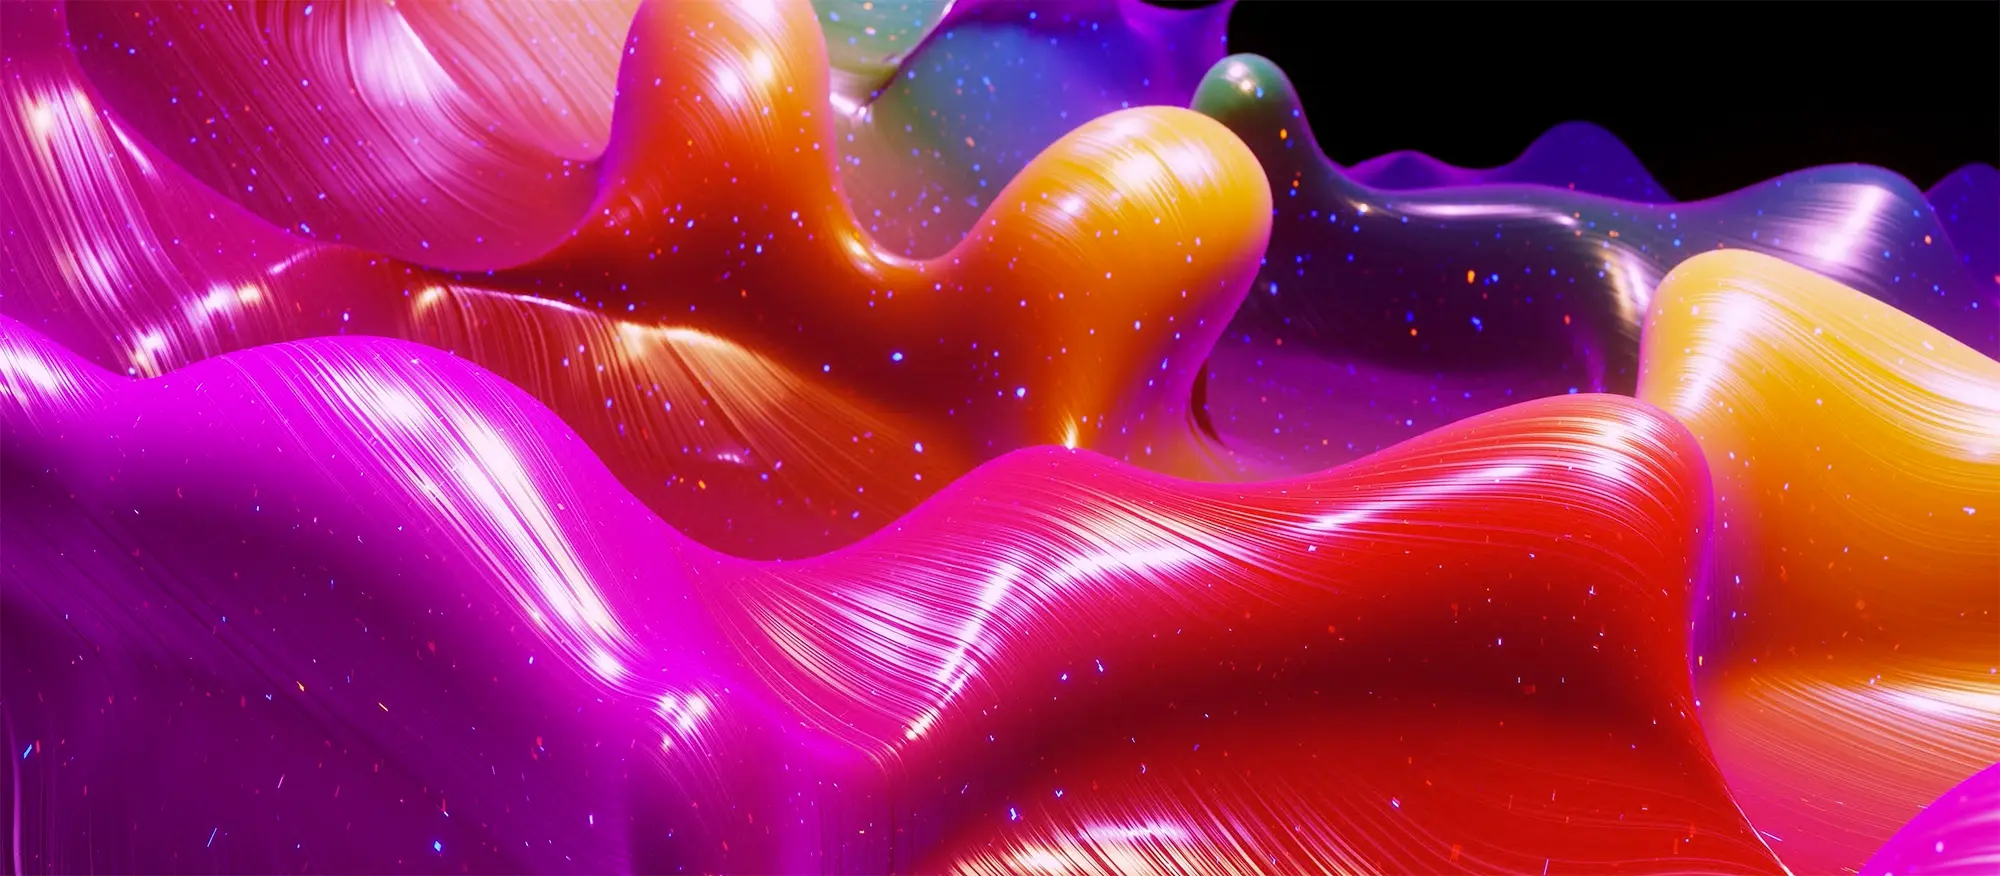 Imagen de animación abstracta suave del color del arcoiris del gradiente líquido. Superficie de pintura brillante como fondo festivo abstracto. Brillos en el líquido viscoso con salpicaduras 3d en la superficie como gotas.